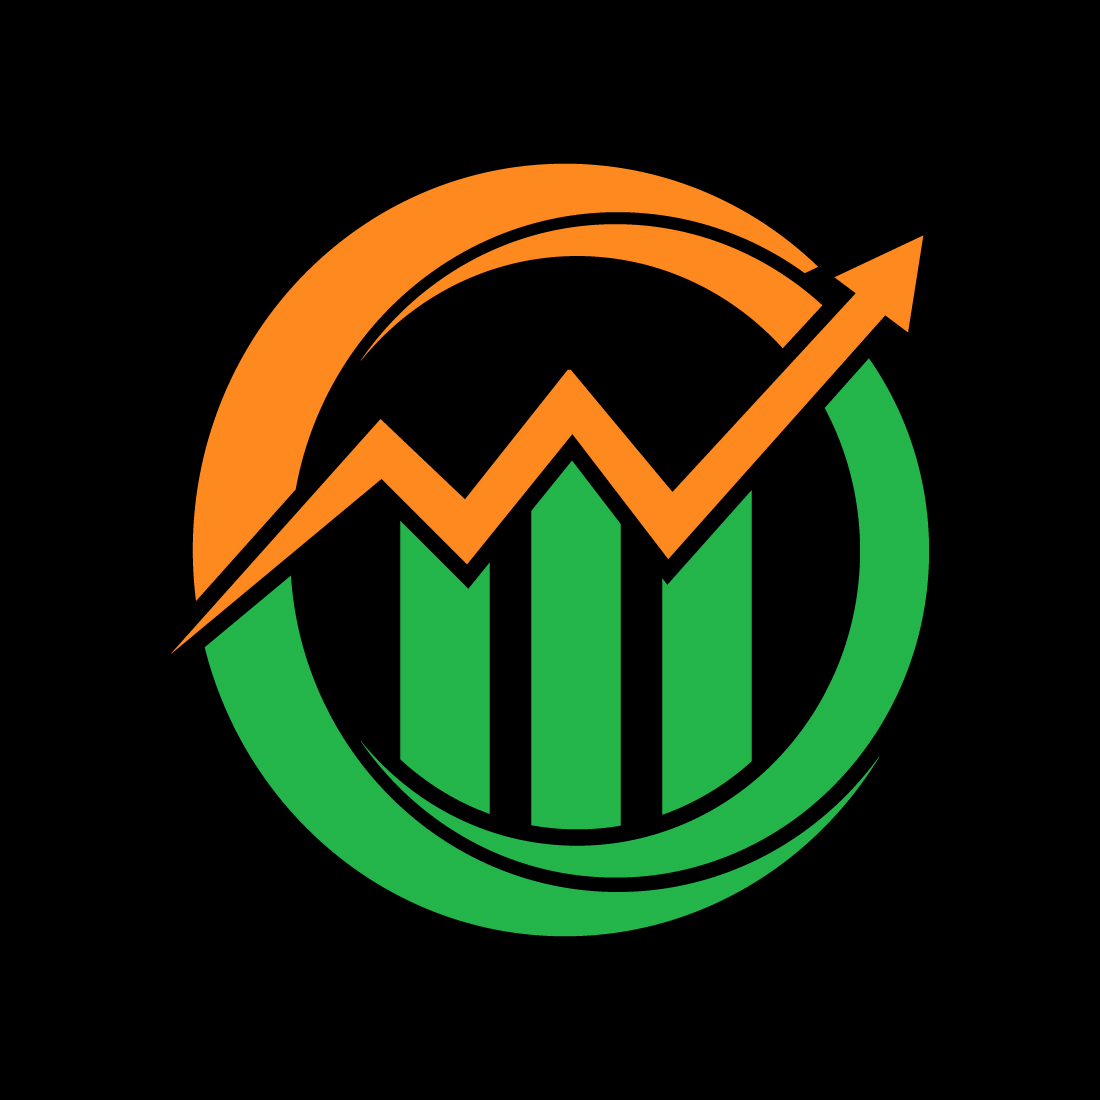 Financial logo creative arrow, Vector design concept cover image.